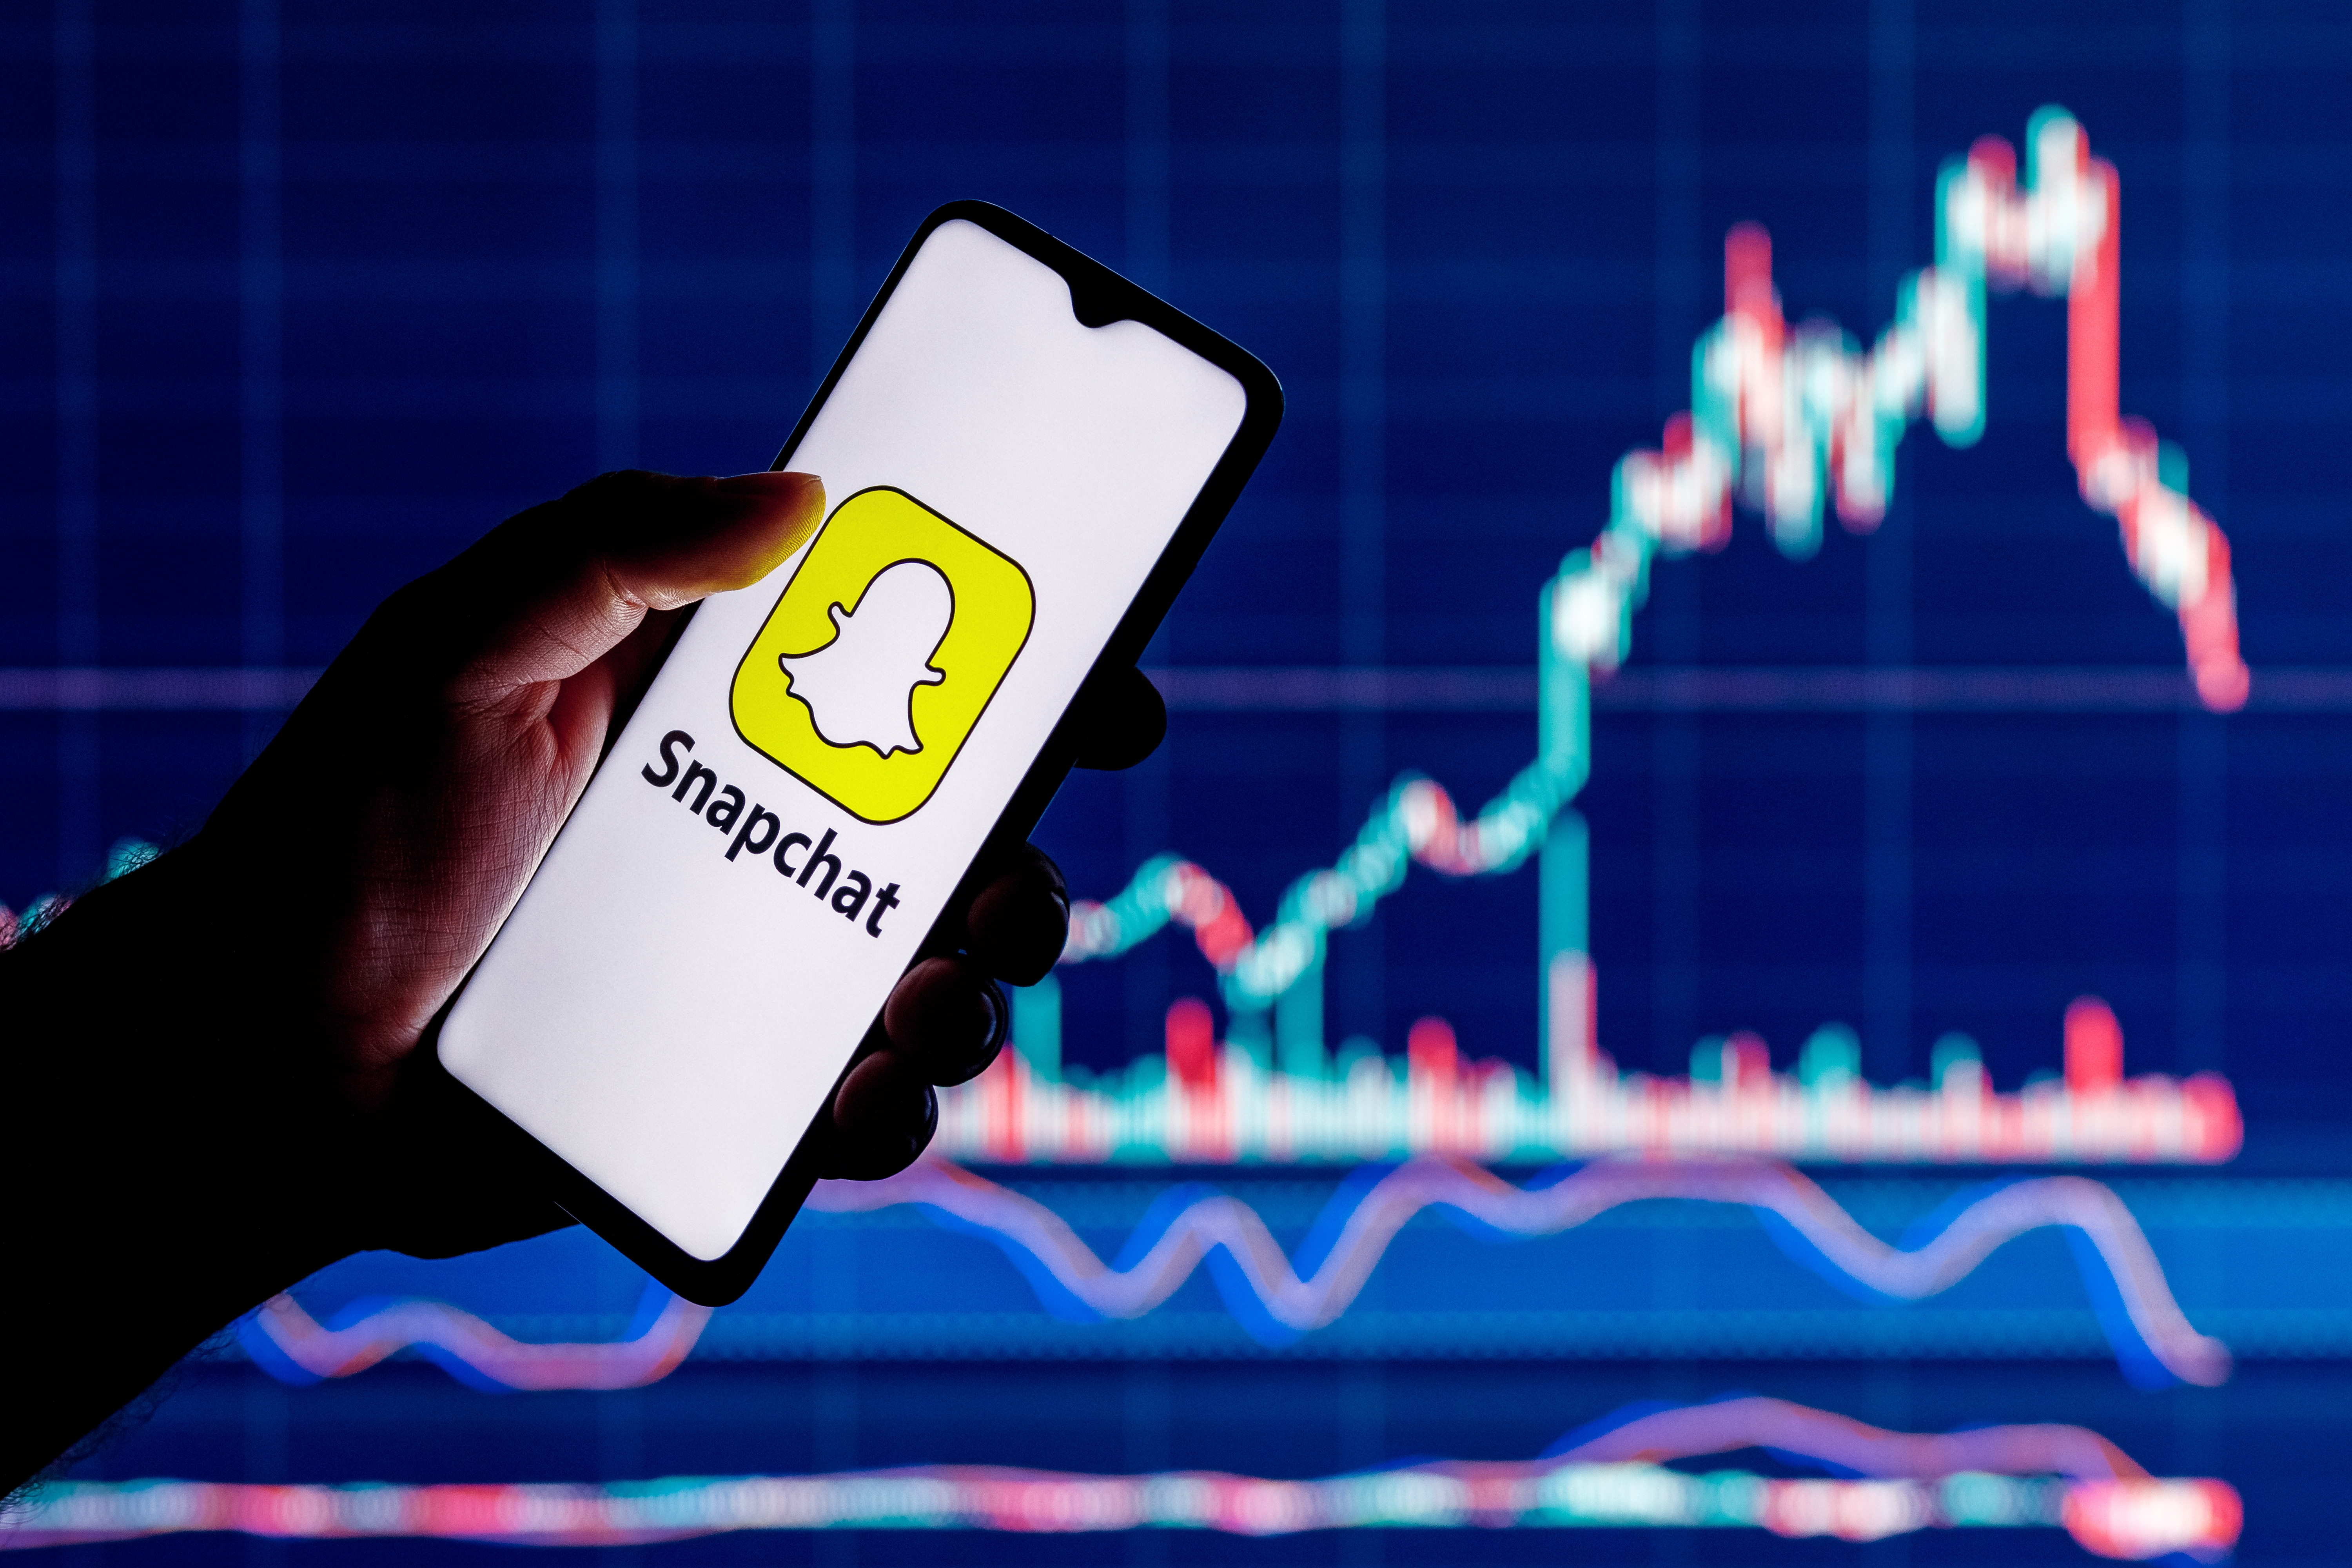 Snapchat: Sự trỗi dậy và sụp đổ của một hiện tượng truyền thông xã hội